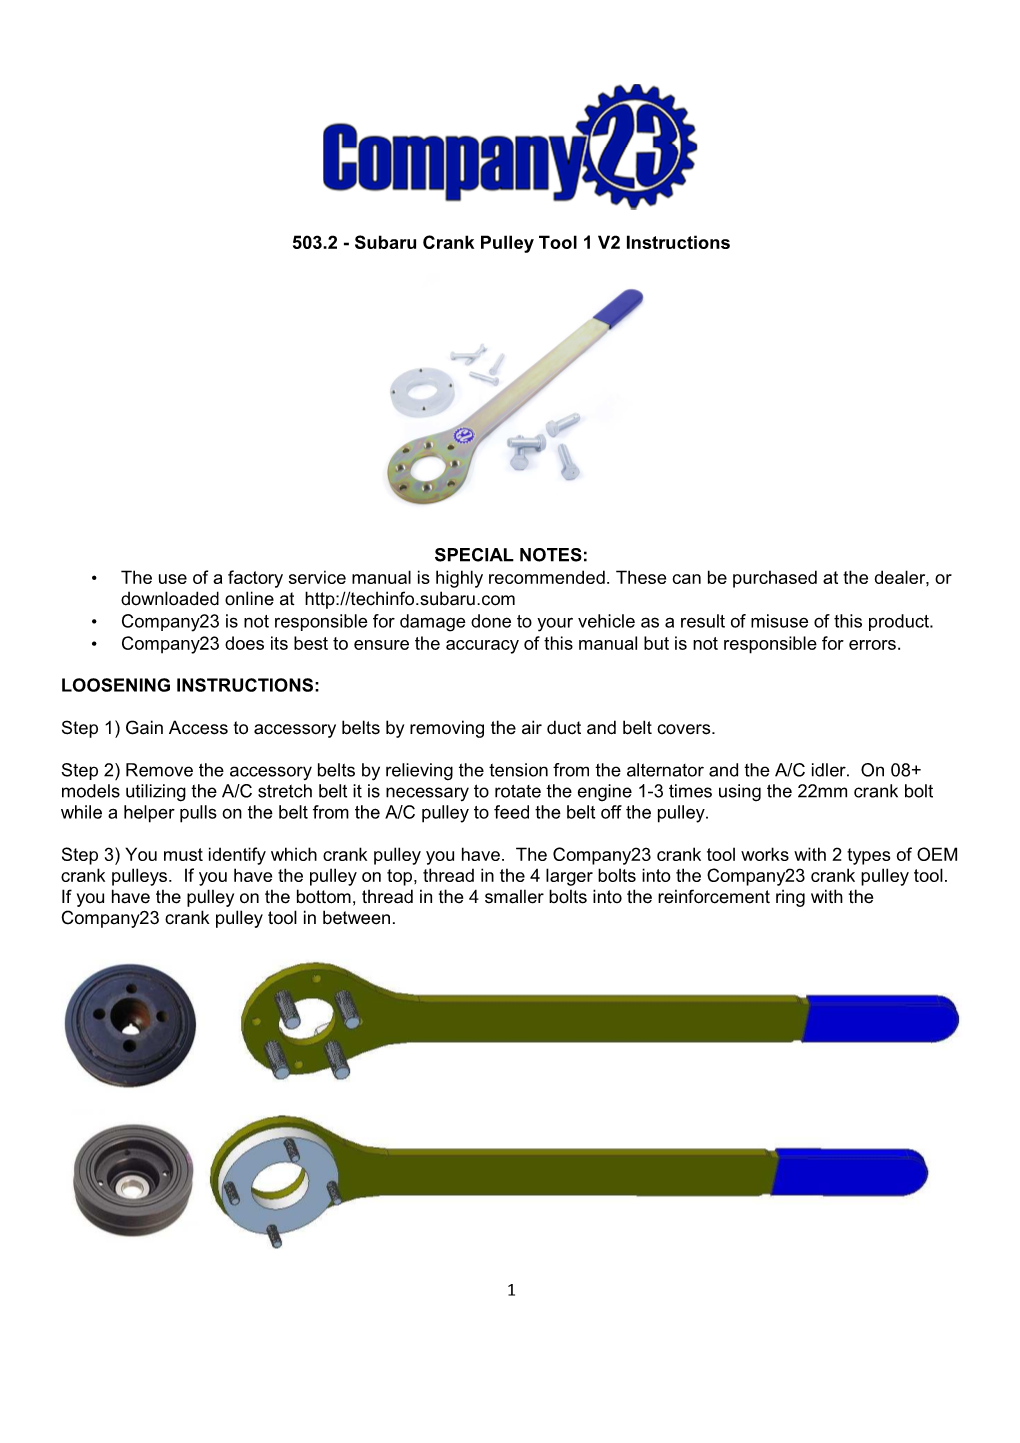 Subaru Crank Pulley Tool Manual